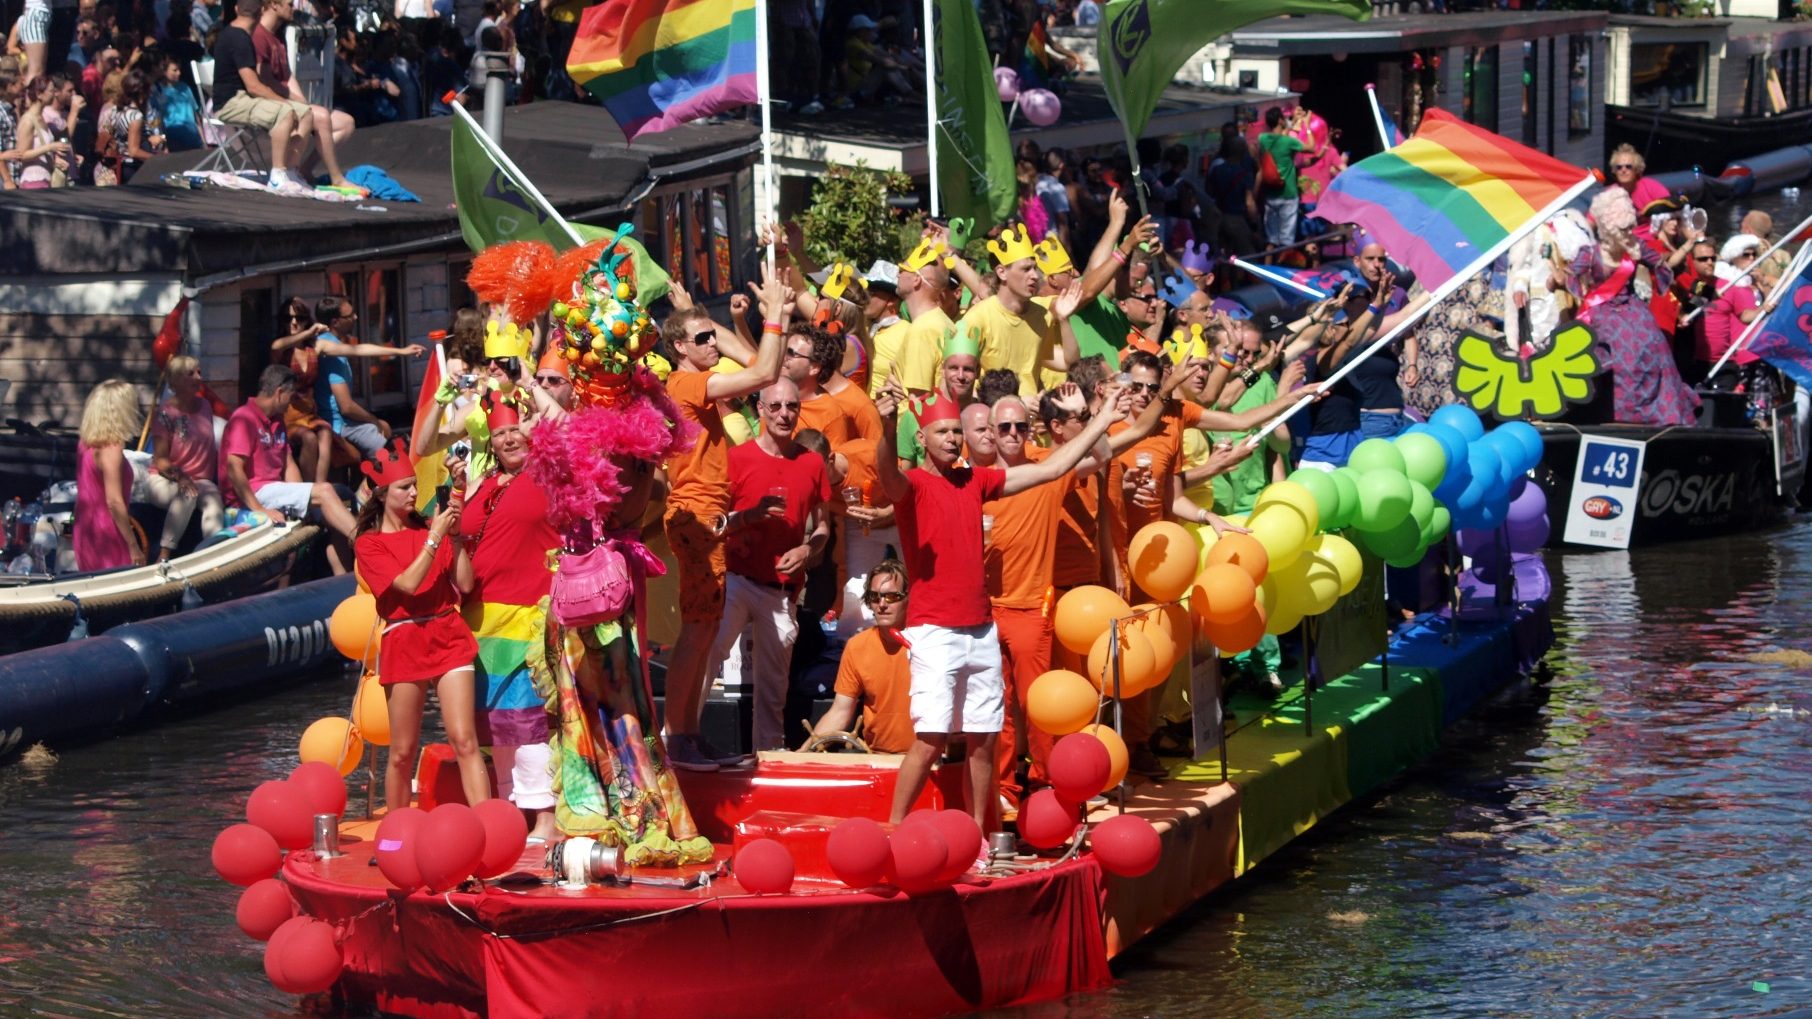 propolski.pl: Konflikt środowiska LGBT z imigrantami. Amsterdam – stolica tolerancji miejscem aktów dyskryminacji. 60 proc. korespondentów boi się ujawnić